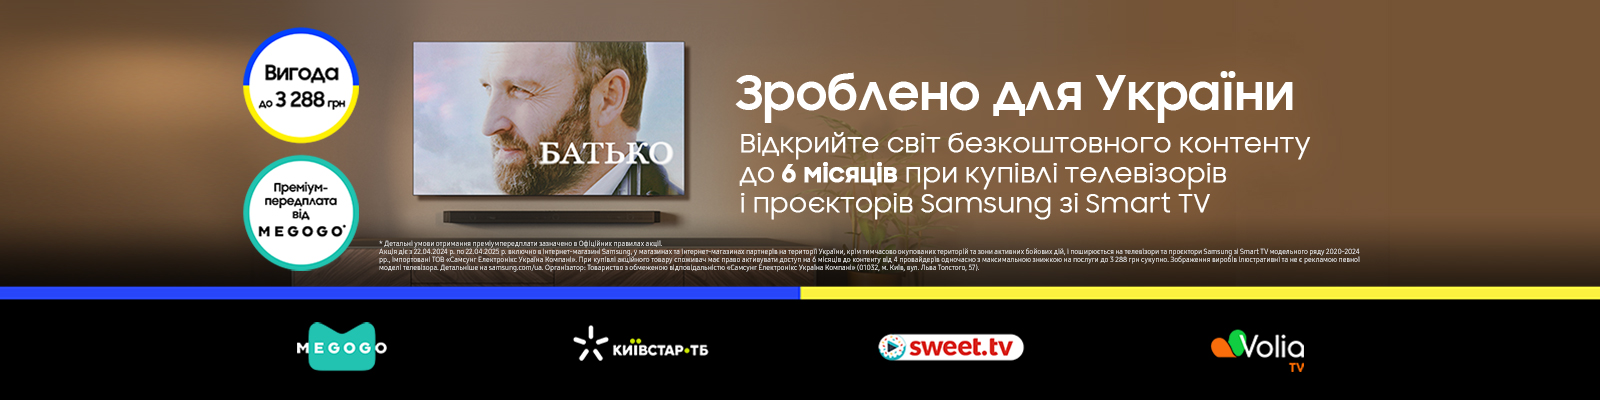 Samsung. Зроблено для України!